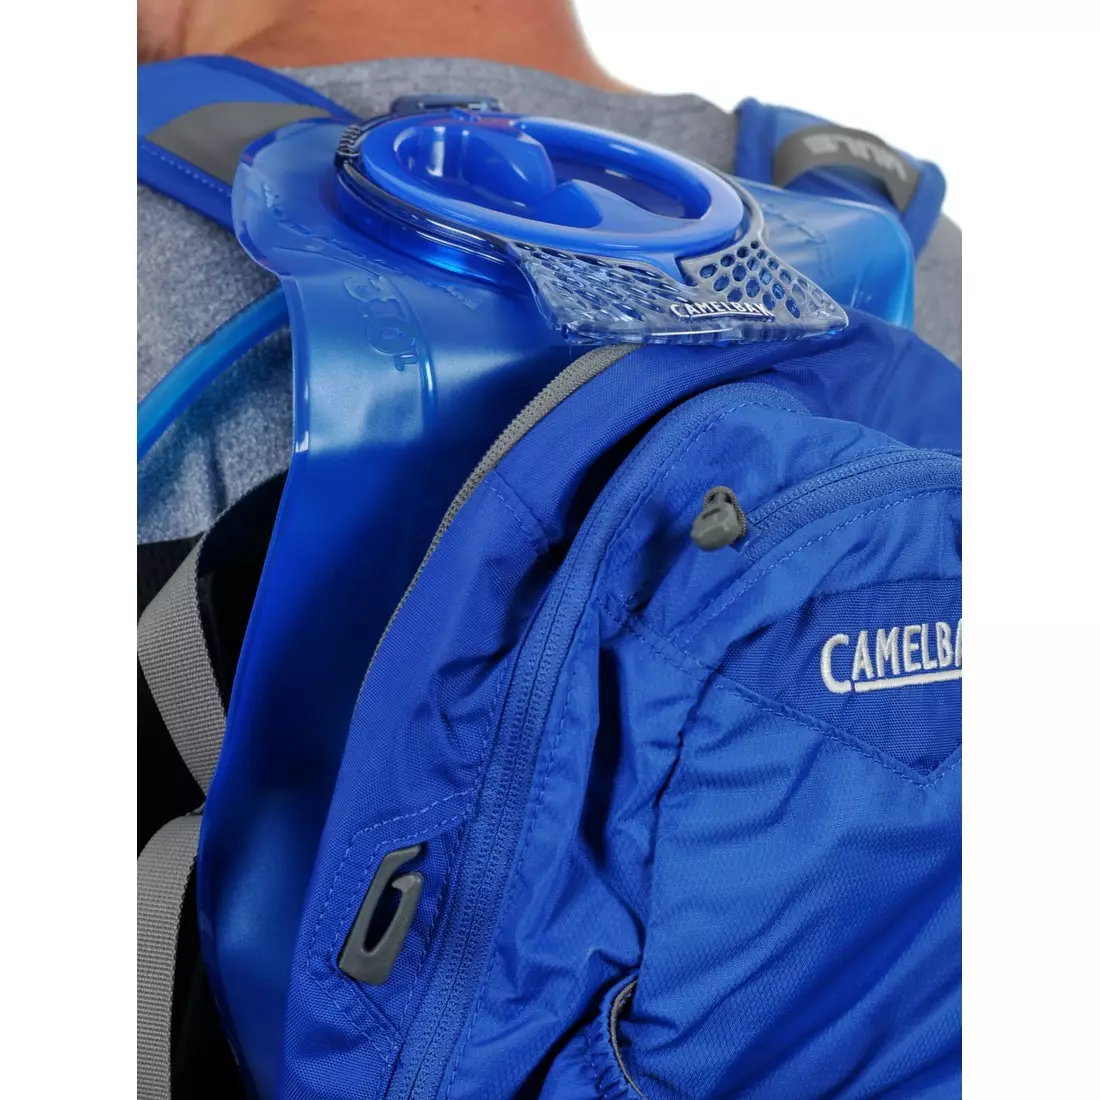 CAMELBAK SS15 MULE 100 2014 Rucksack mit Wasserblase. reines Blau